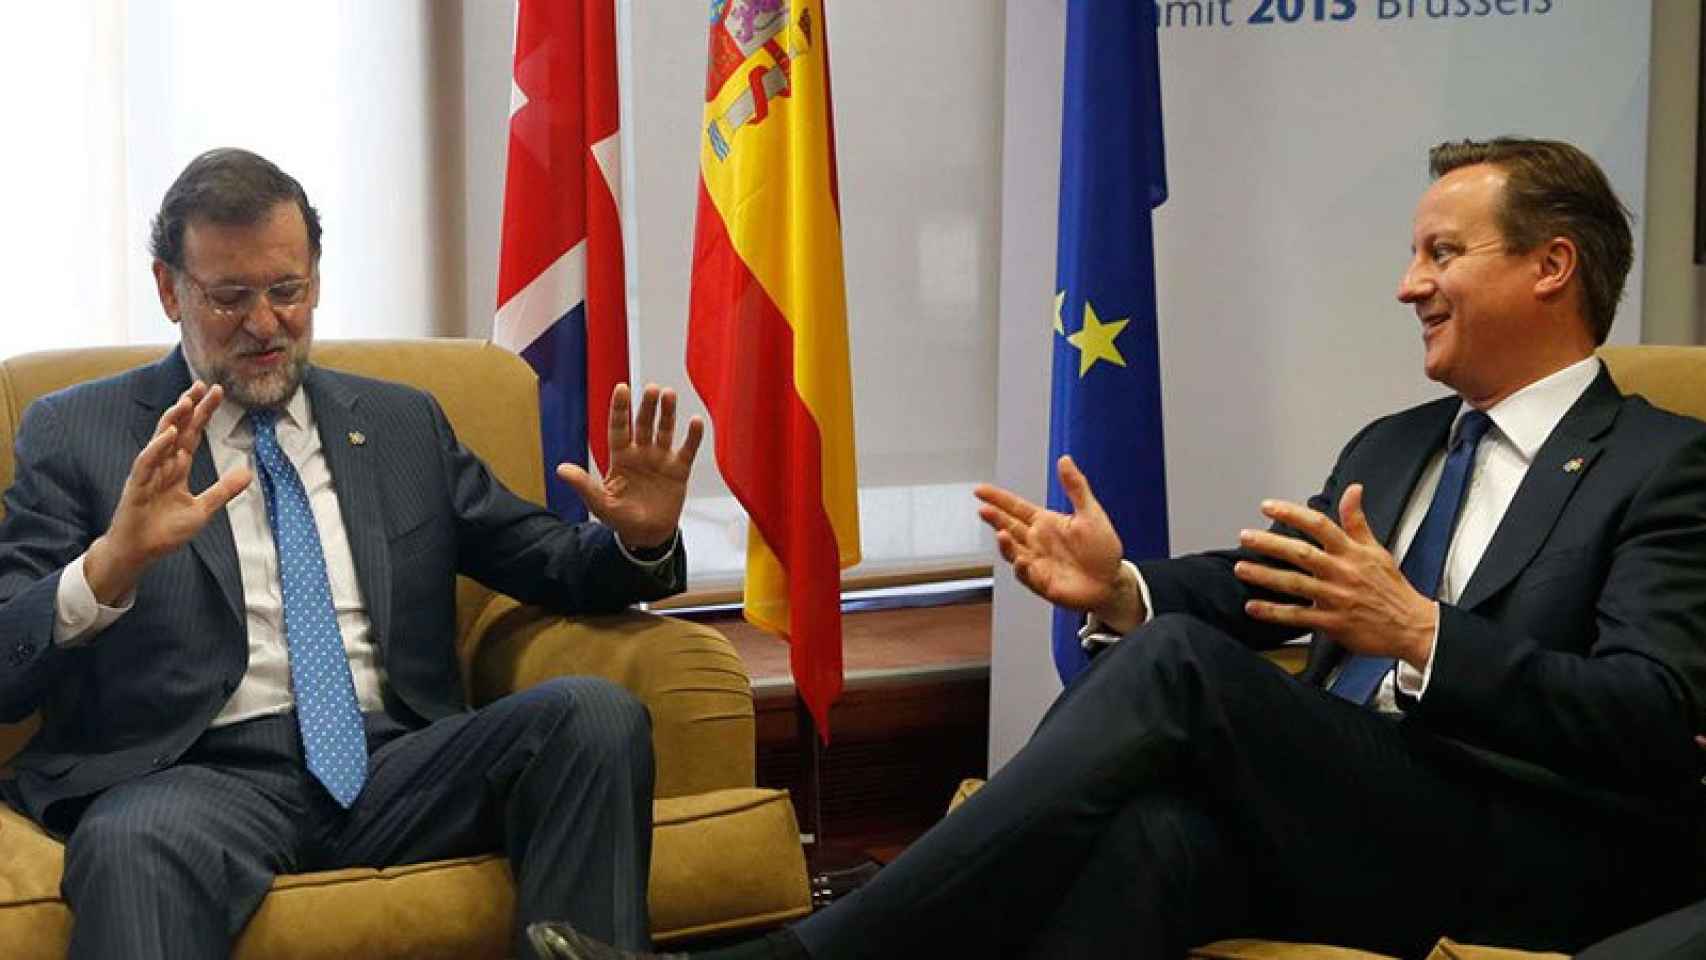 Mariano Rajoy y David Cameron conversan en una imagen de archivo.